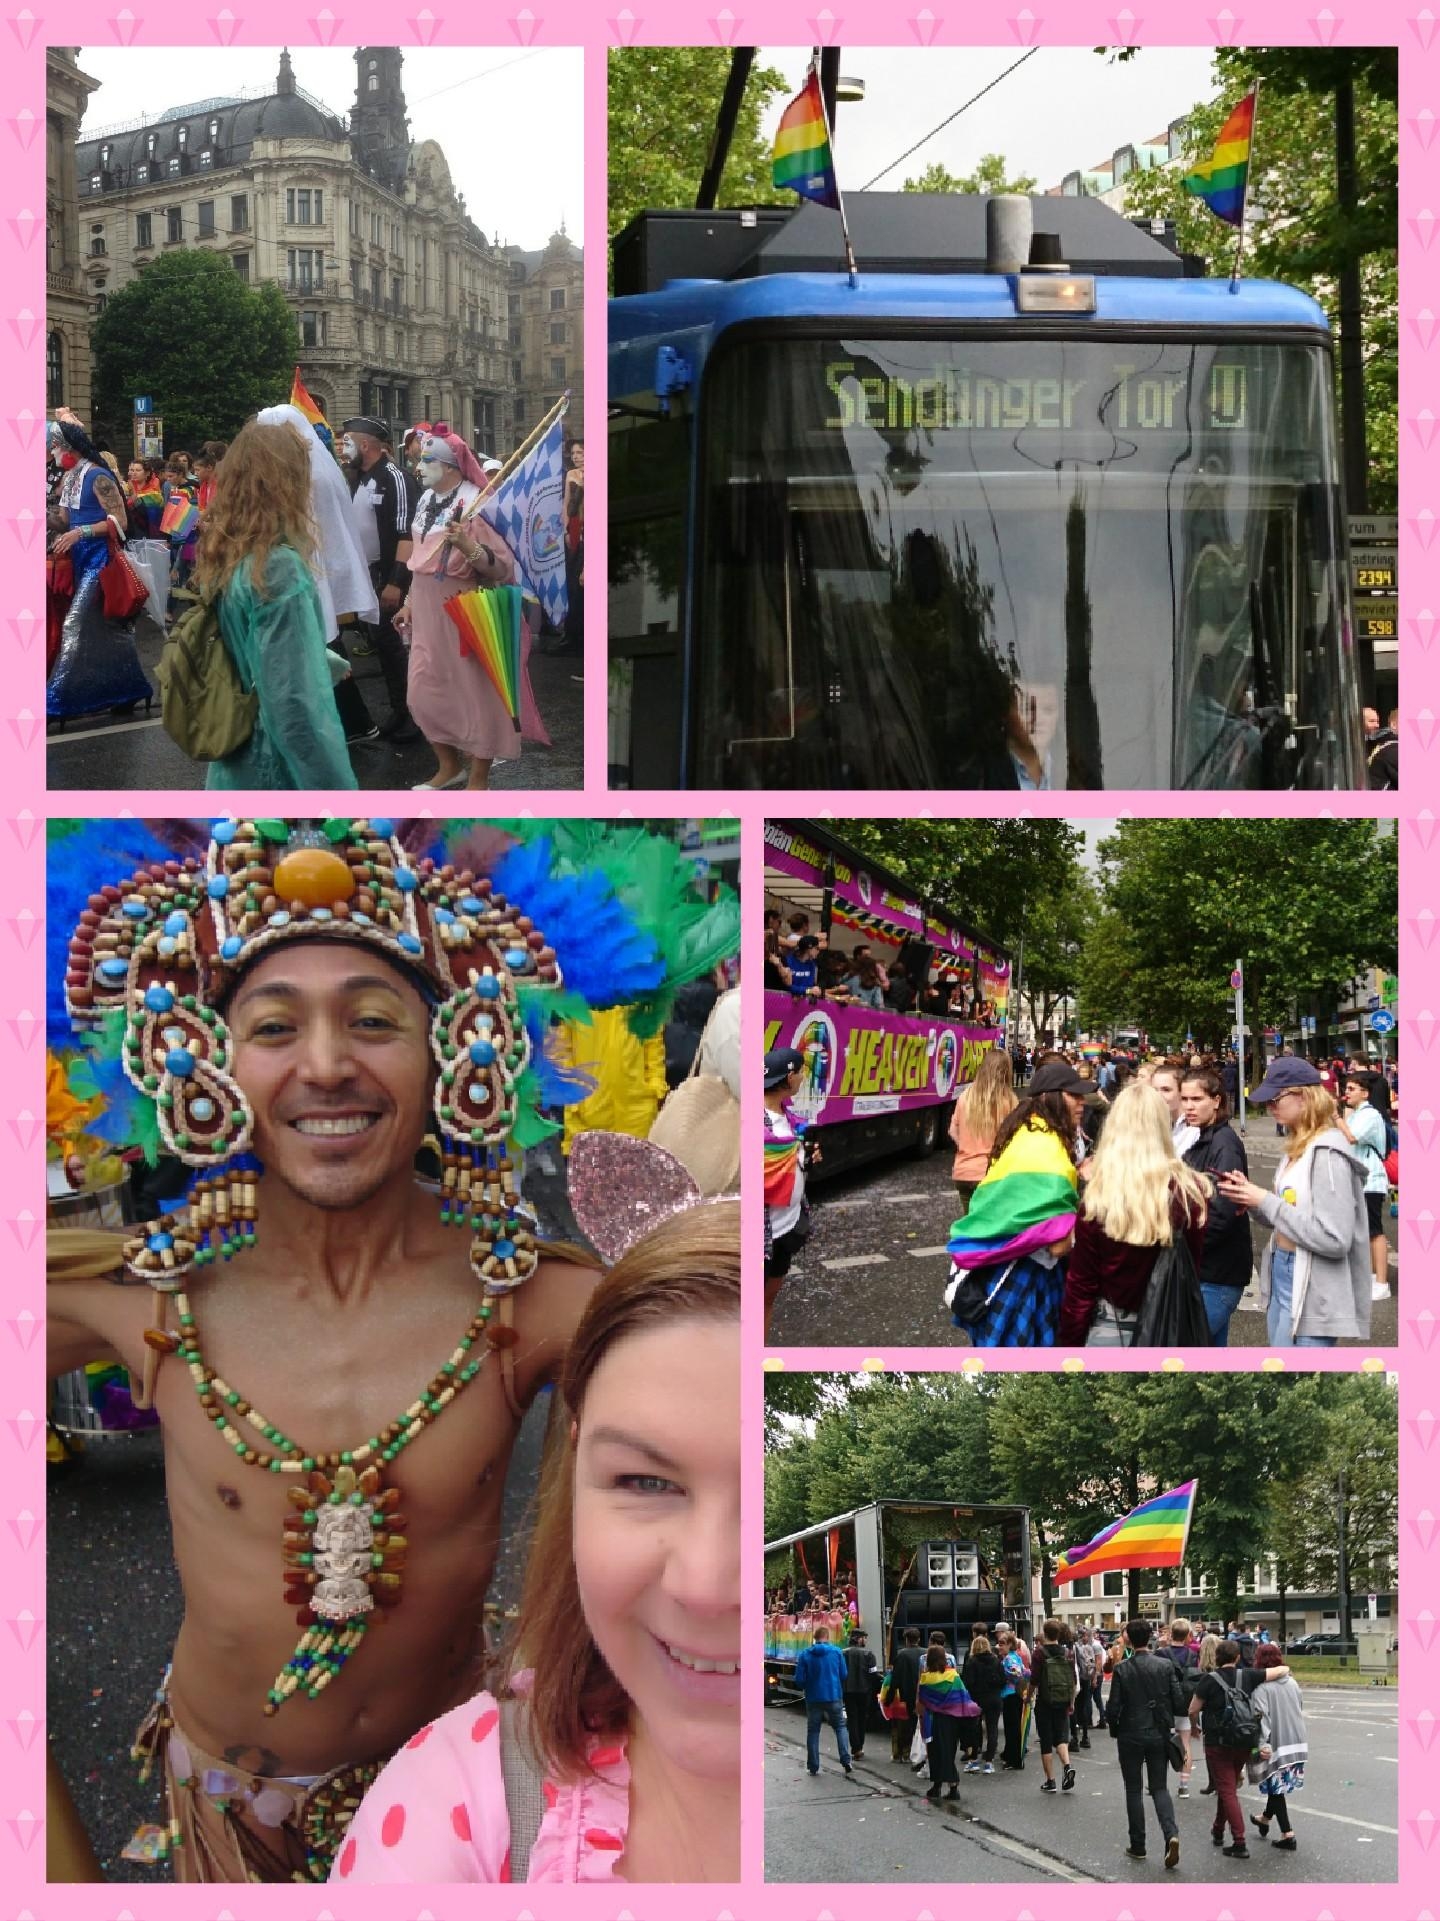 #München ist bunt 🌈

#CSD #pride #Parade
